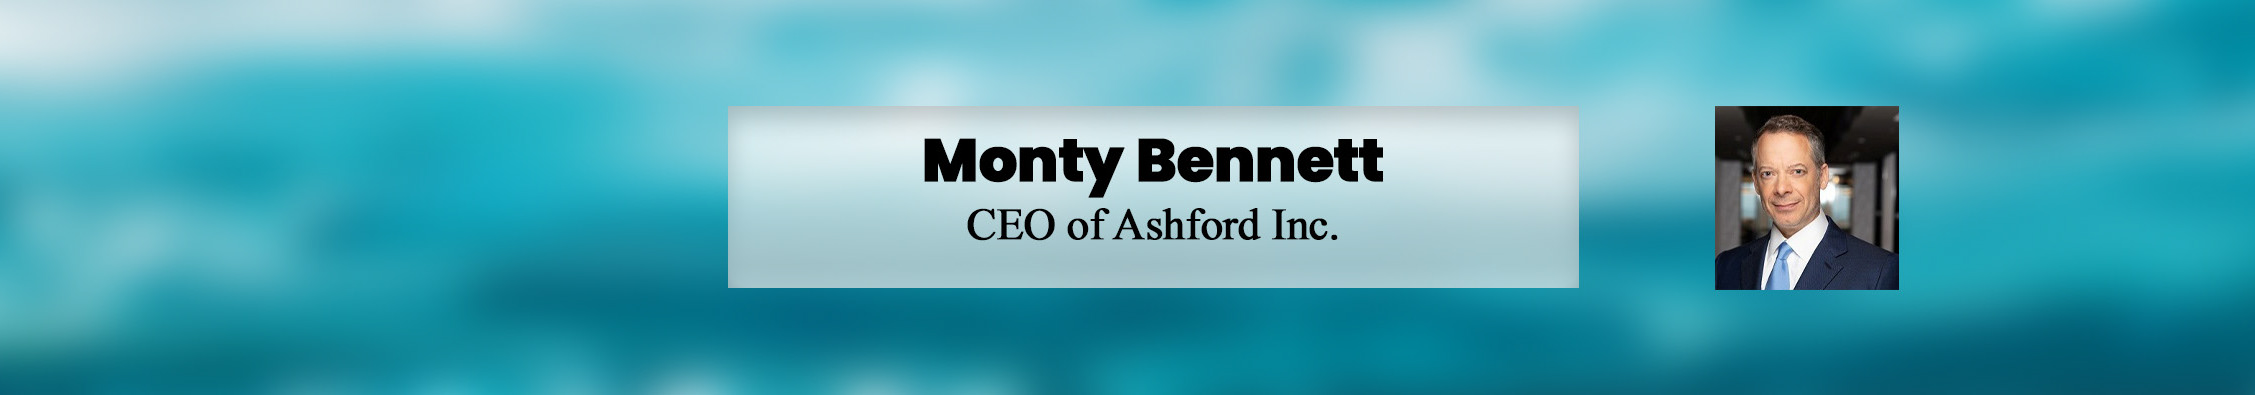 Monty Bennetts profilbanner